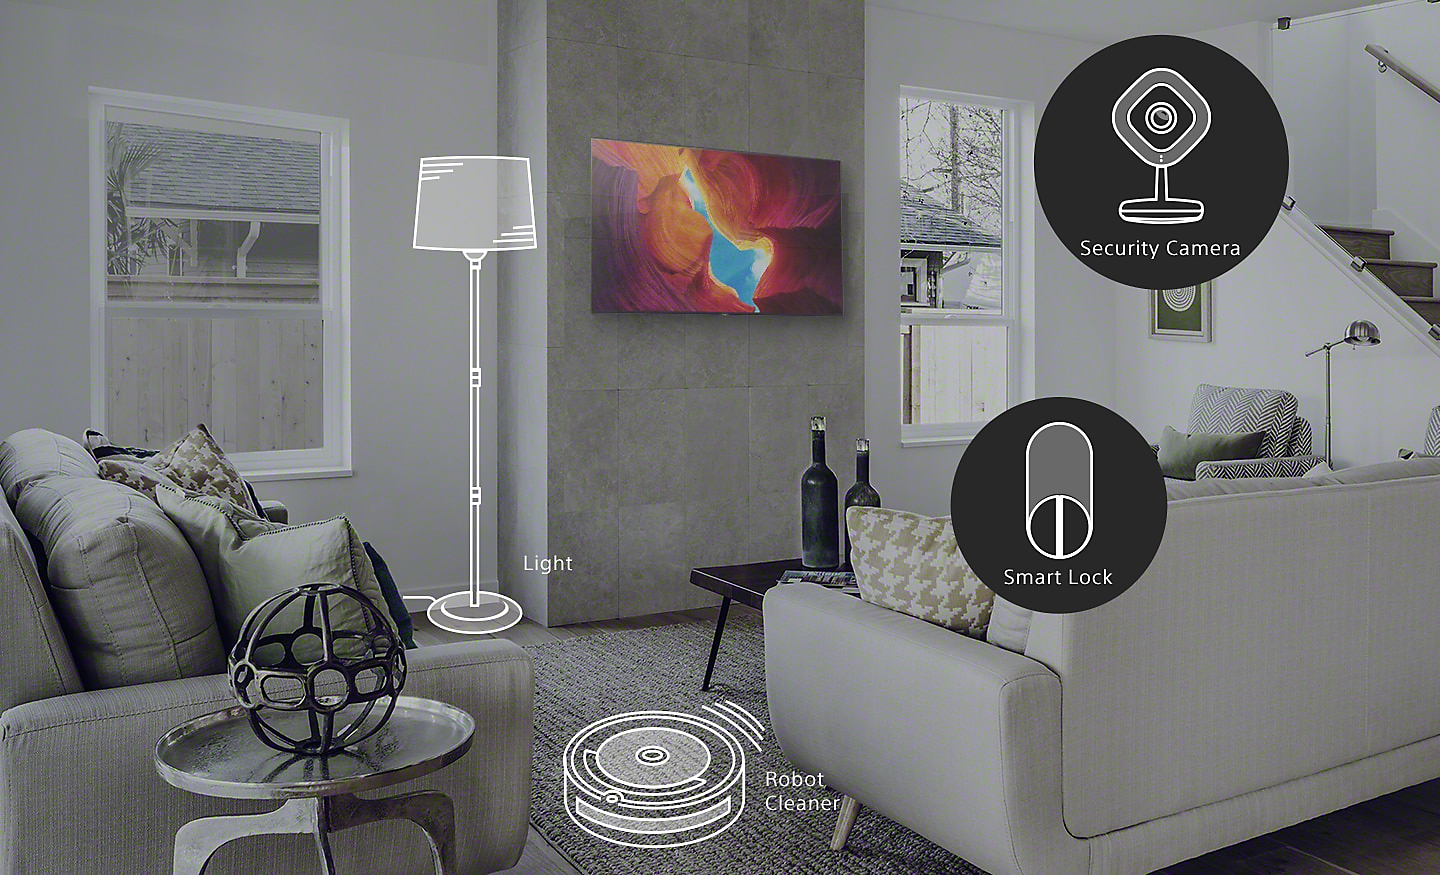 Bild eines Wohnzimmers mit Smart-Home-Geräten, einschließlich Licht, Saugroboter, Sicherheitskamera und Smart Lock